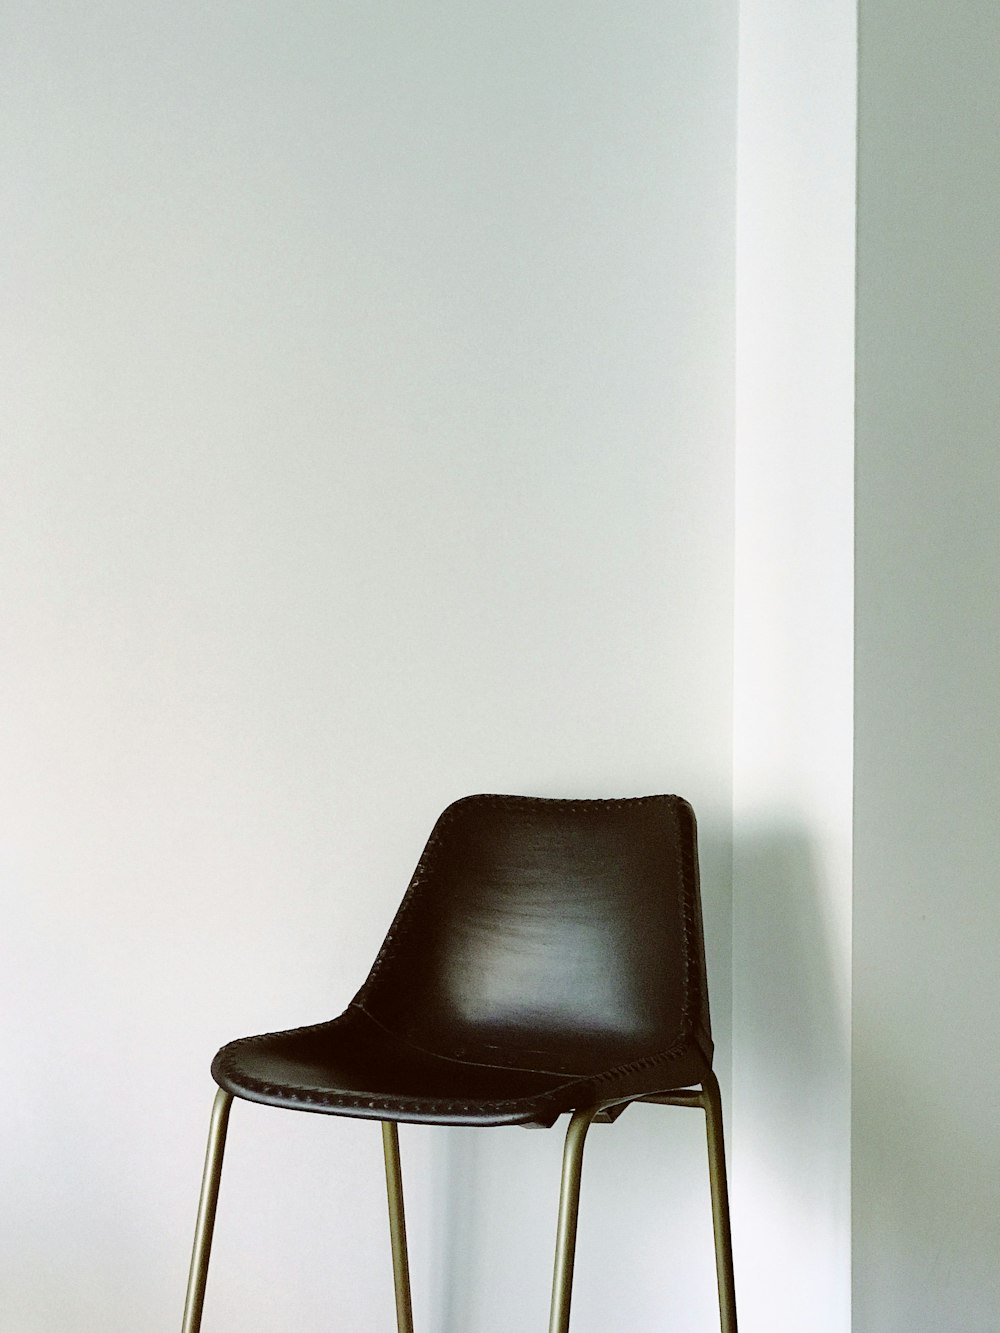 sedia marrone vicino al muro dipinto di bianco